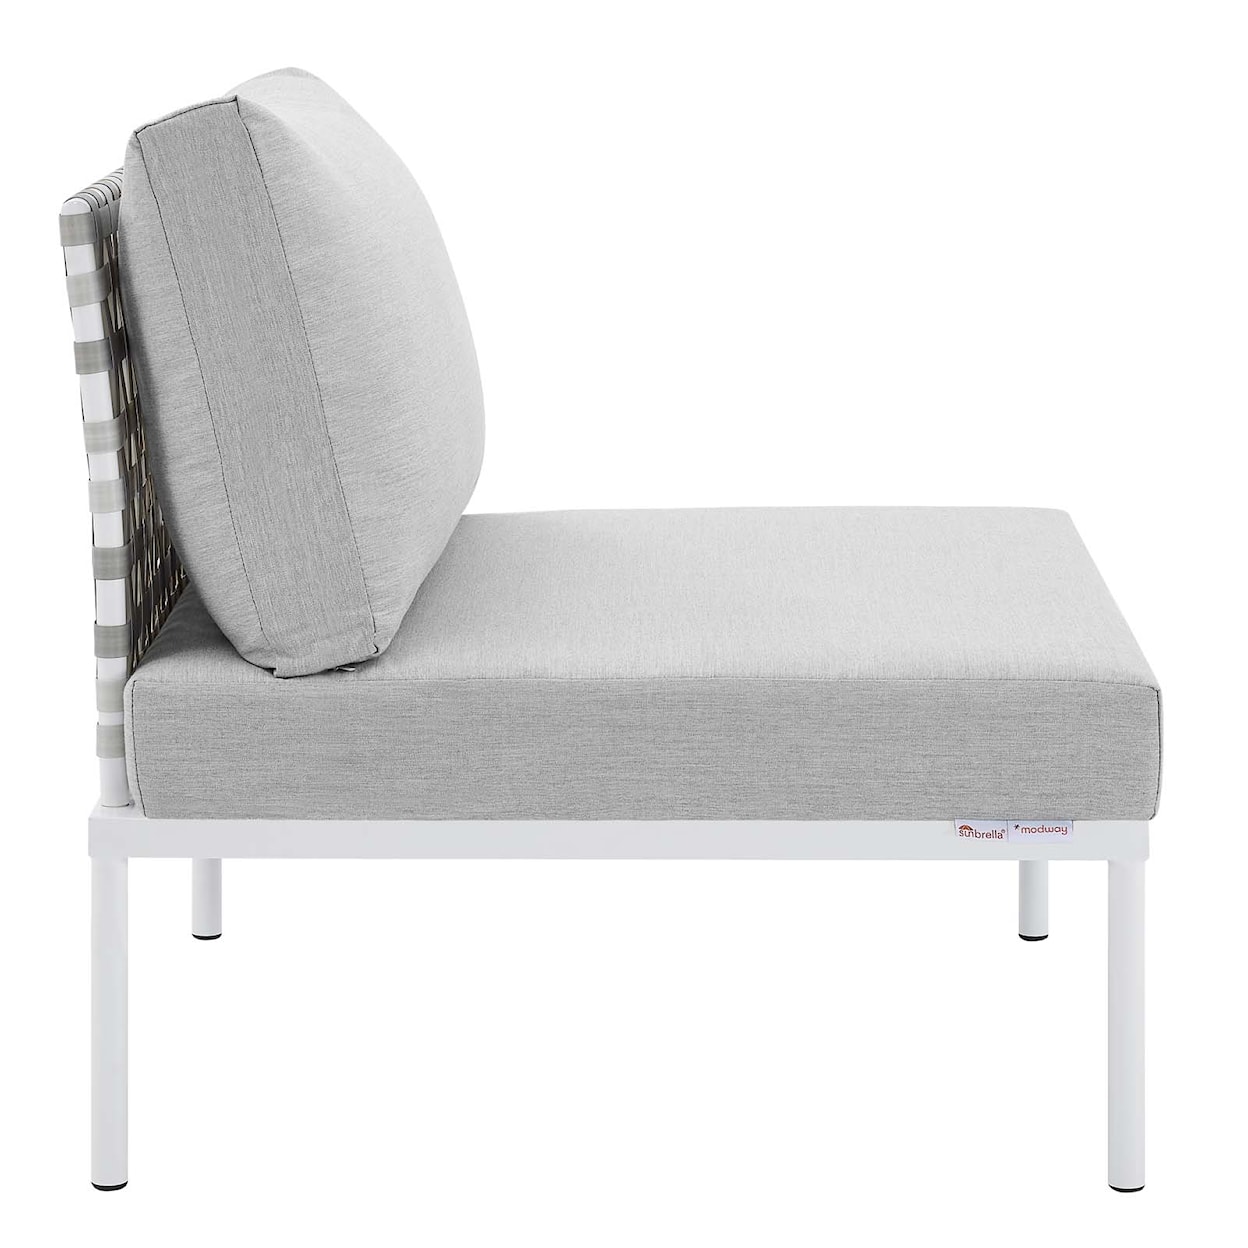 Modway Harmony Outdoor Aluminum Armless Chair